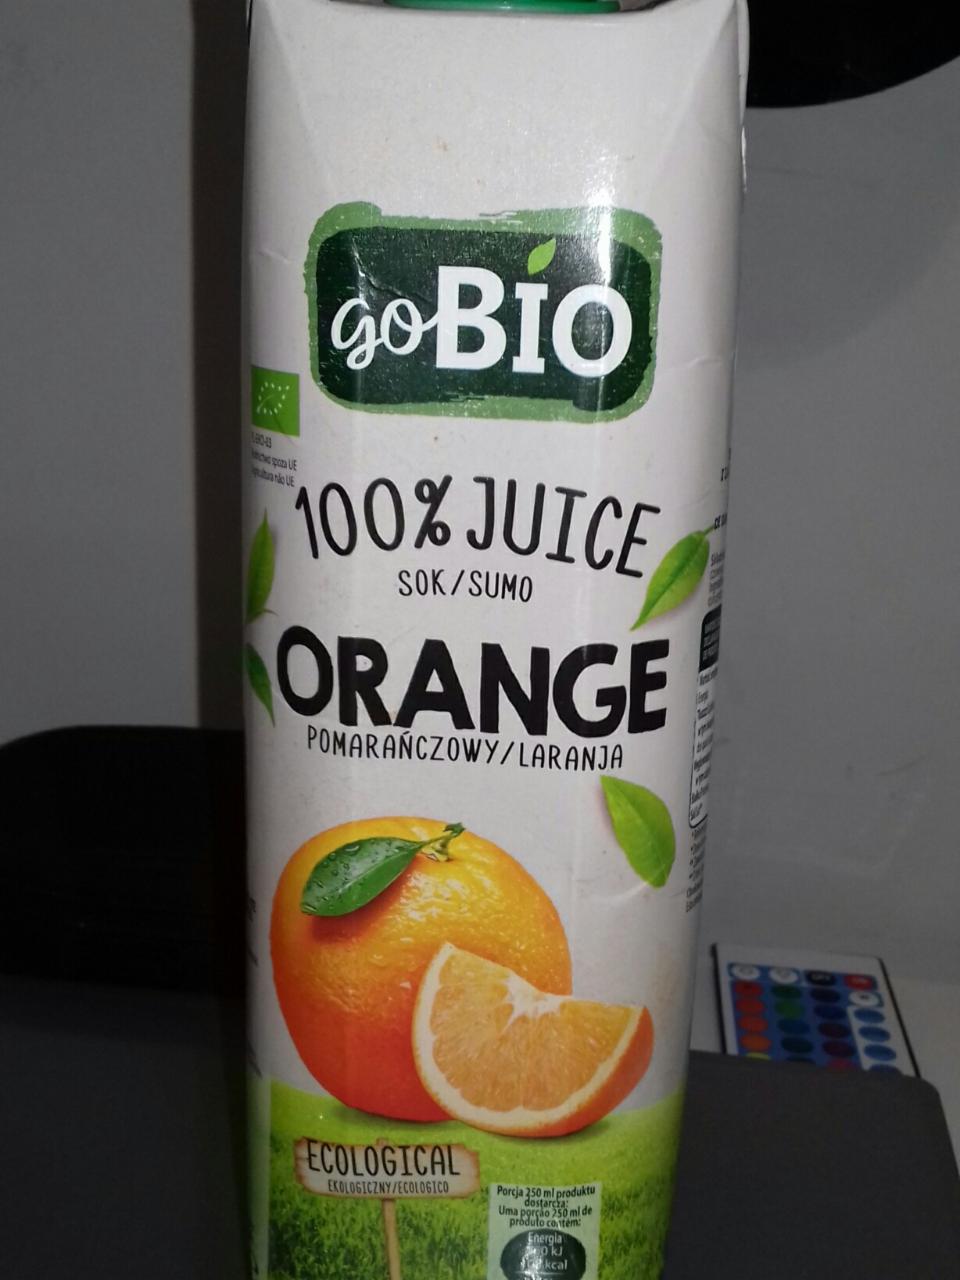 Zdjęcia - BIO goBio 100% Juice Orange